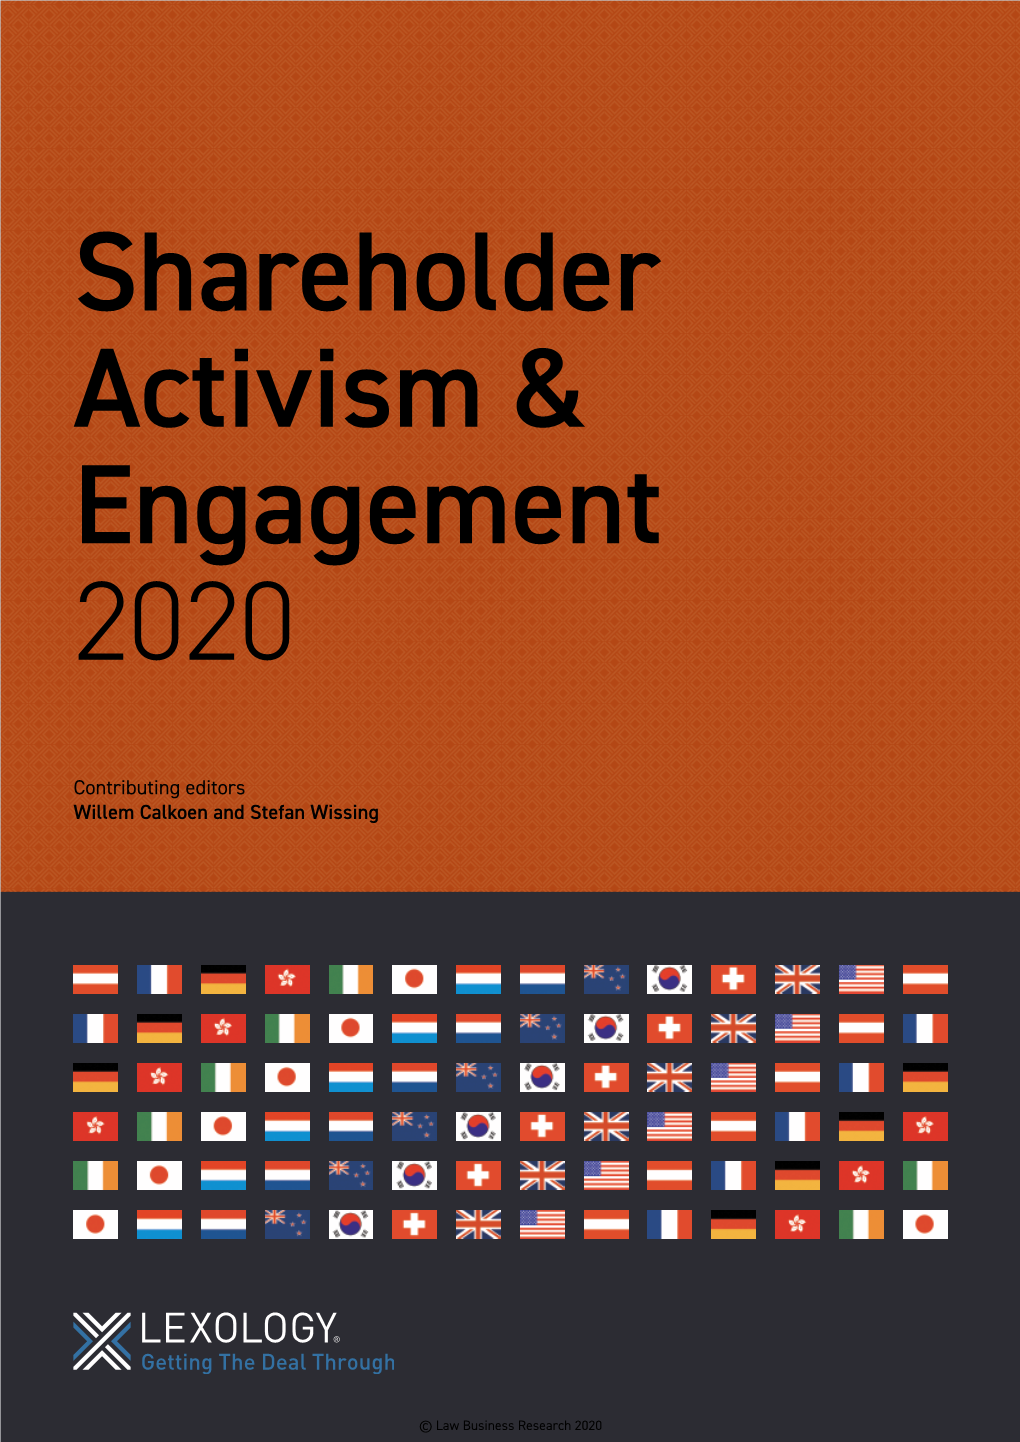 Shareholder Activism & Engagement 2020